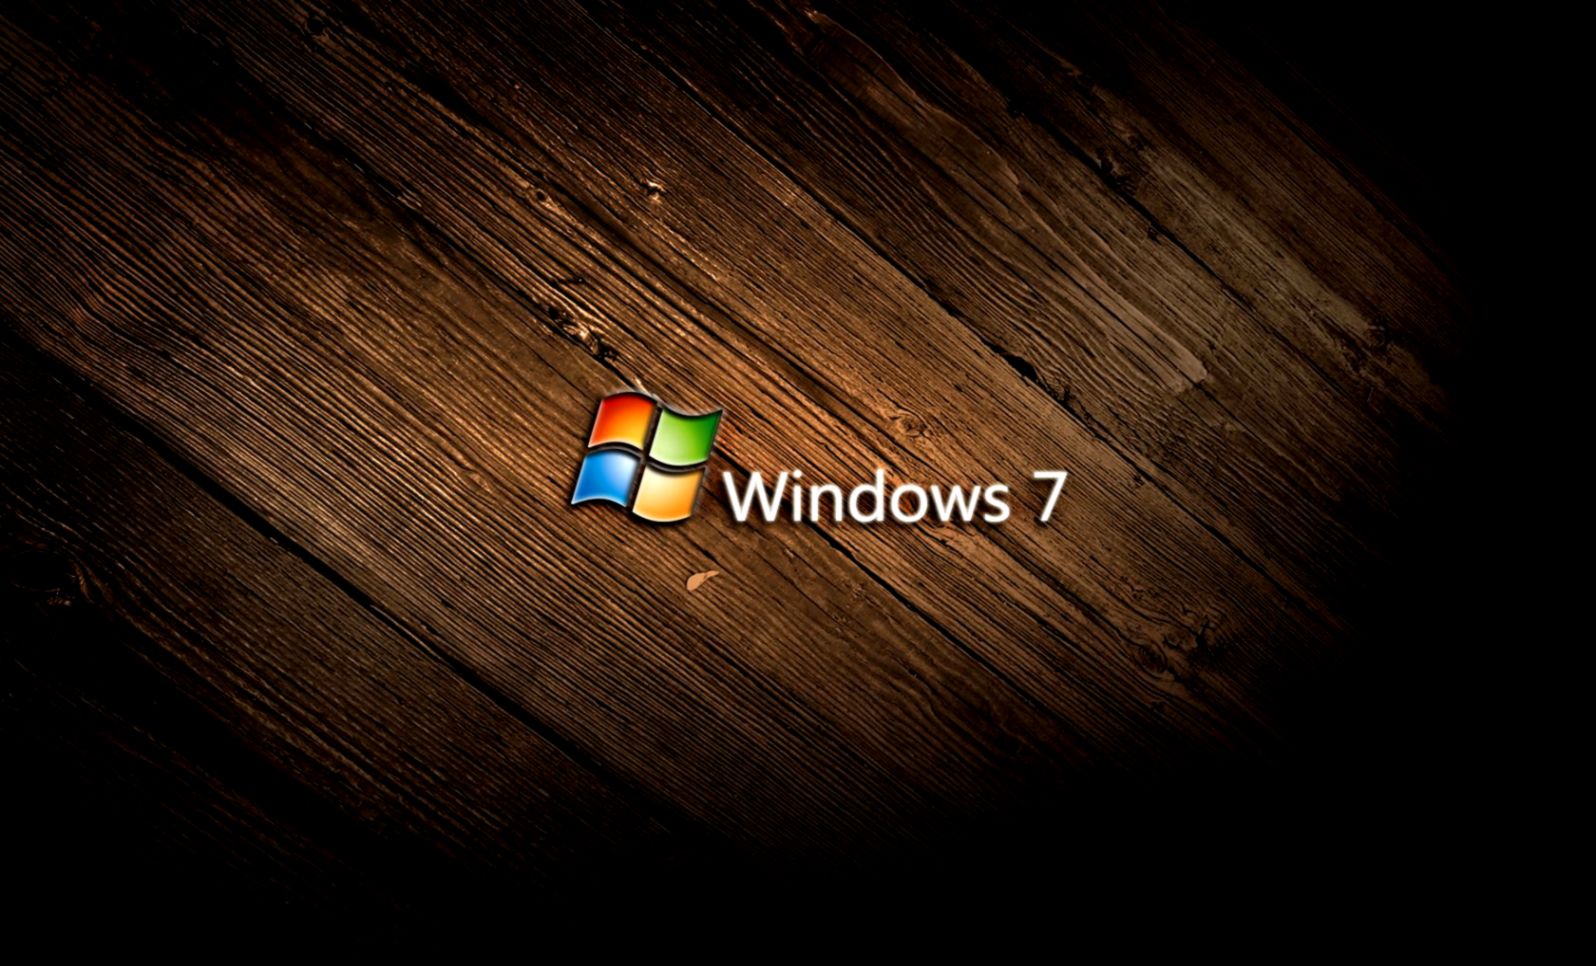 Bạn là người yêu thích Windows 7 và muốn tìm kiếm những hình nền HD đẹp mắt cho màn hình máy tính của mình? Hãy thử khám phá ngay bộ sưu tập hình nền Windows 7 HD wallpapers để tạo ra một giao diện máy tính đẹp và phong cách hơn.